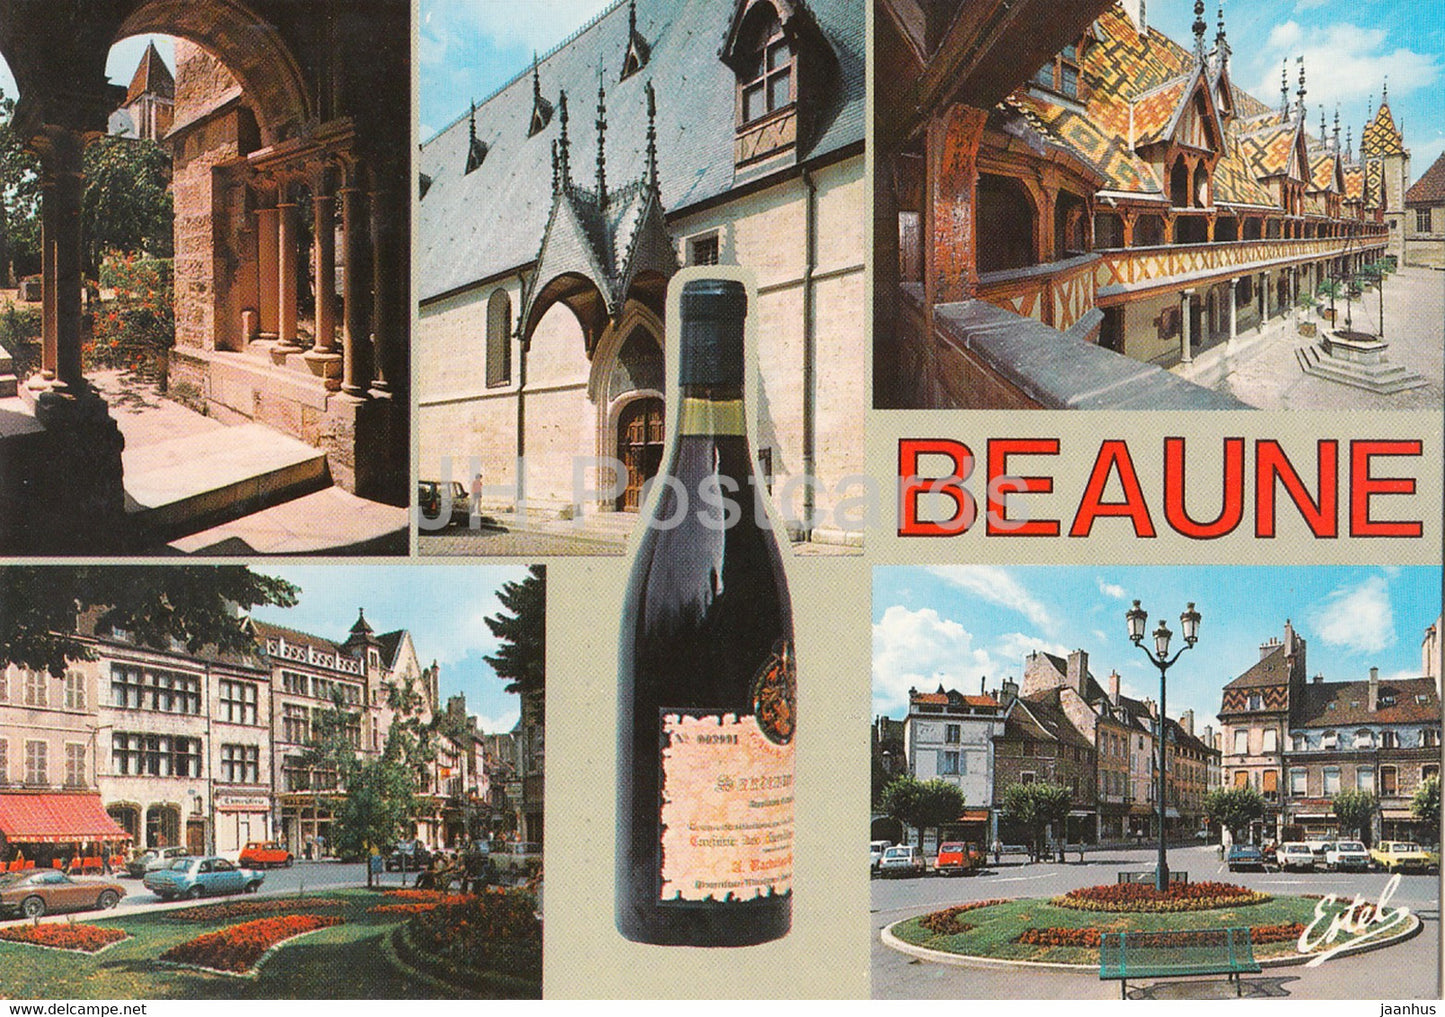 Beaune - Le Cloitre - La Place Carnot - wine - France - unused - JH Postcards